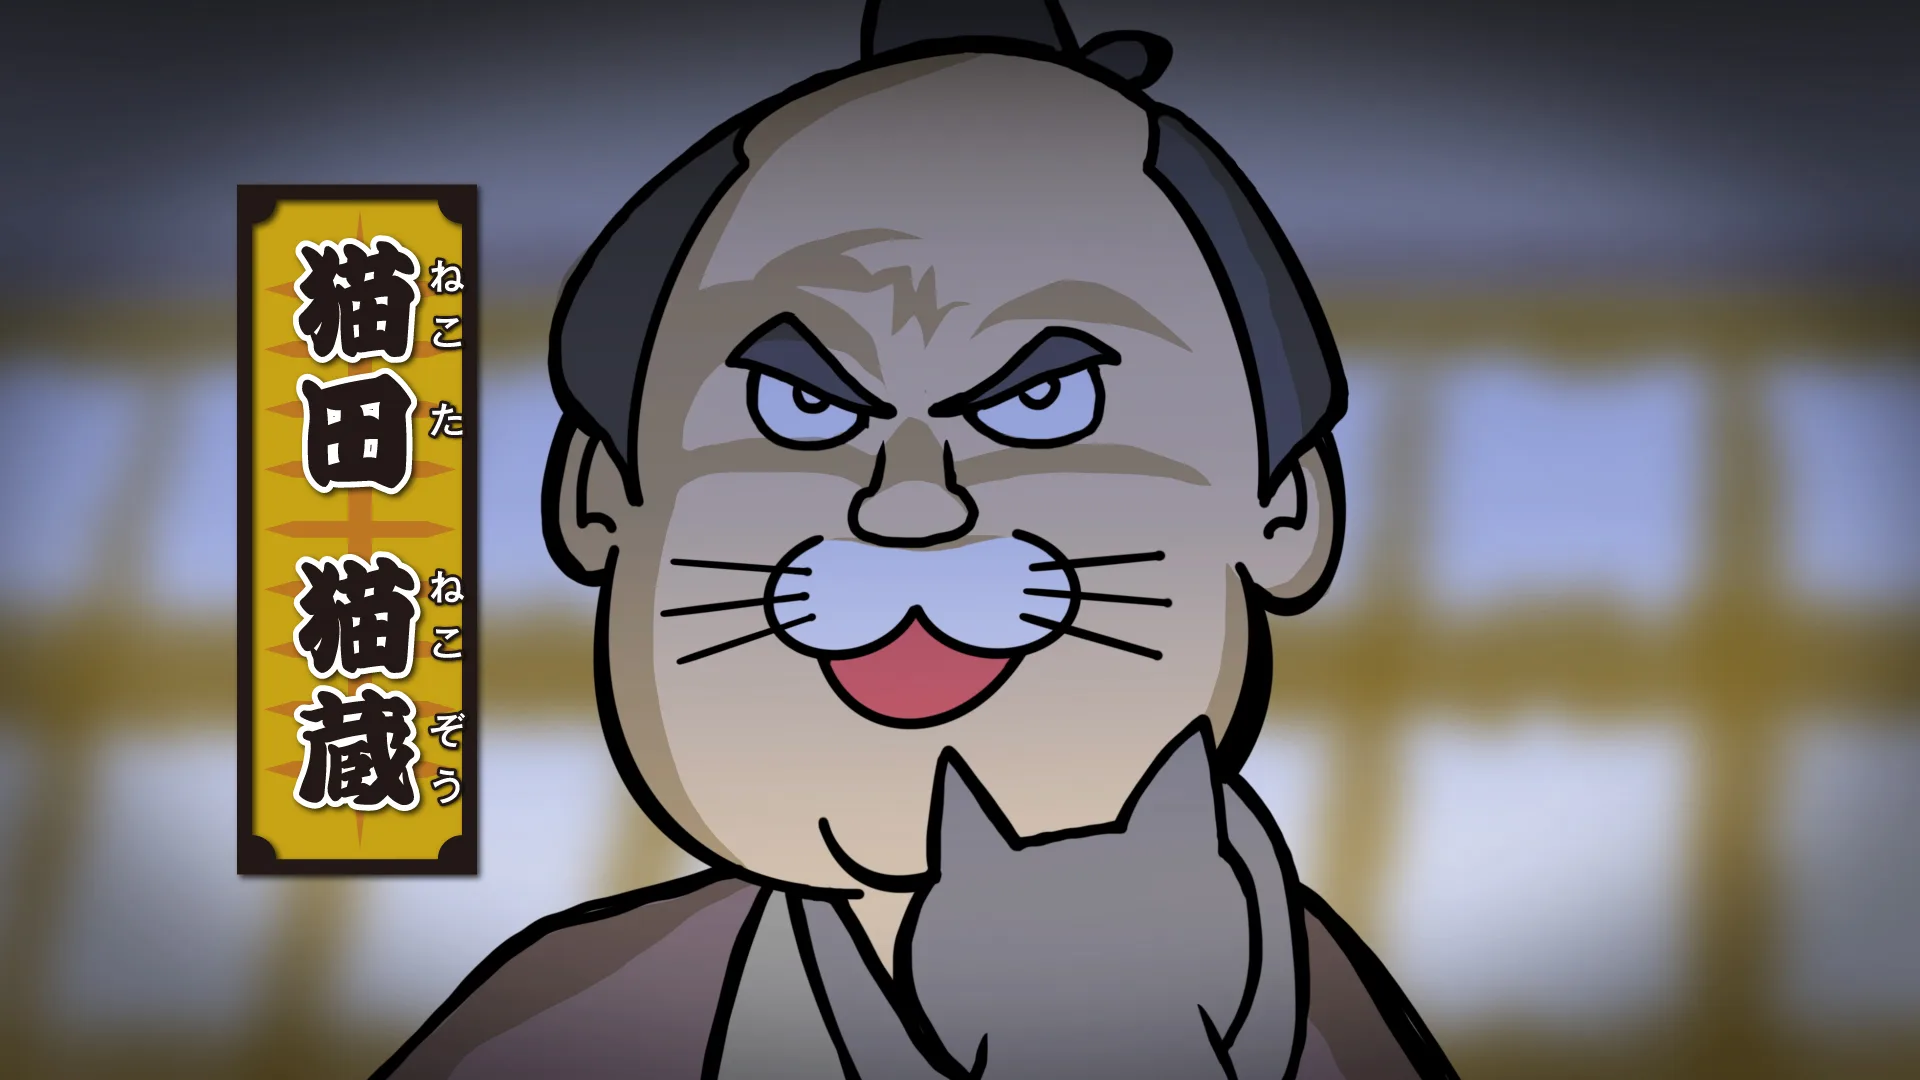 ゴスペラーズが声優を務めるアニメ「アカペラ侍」第2話「猫と羽守隊の巻」のワンシーン